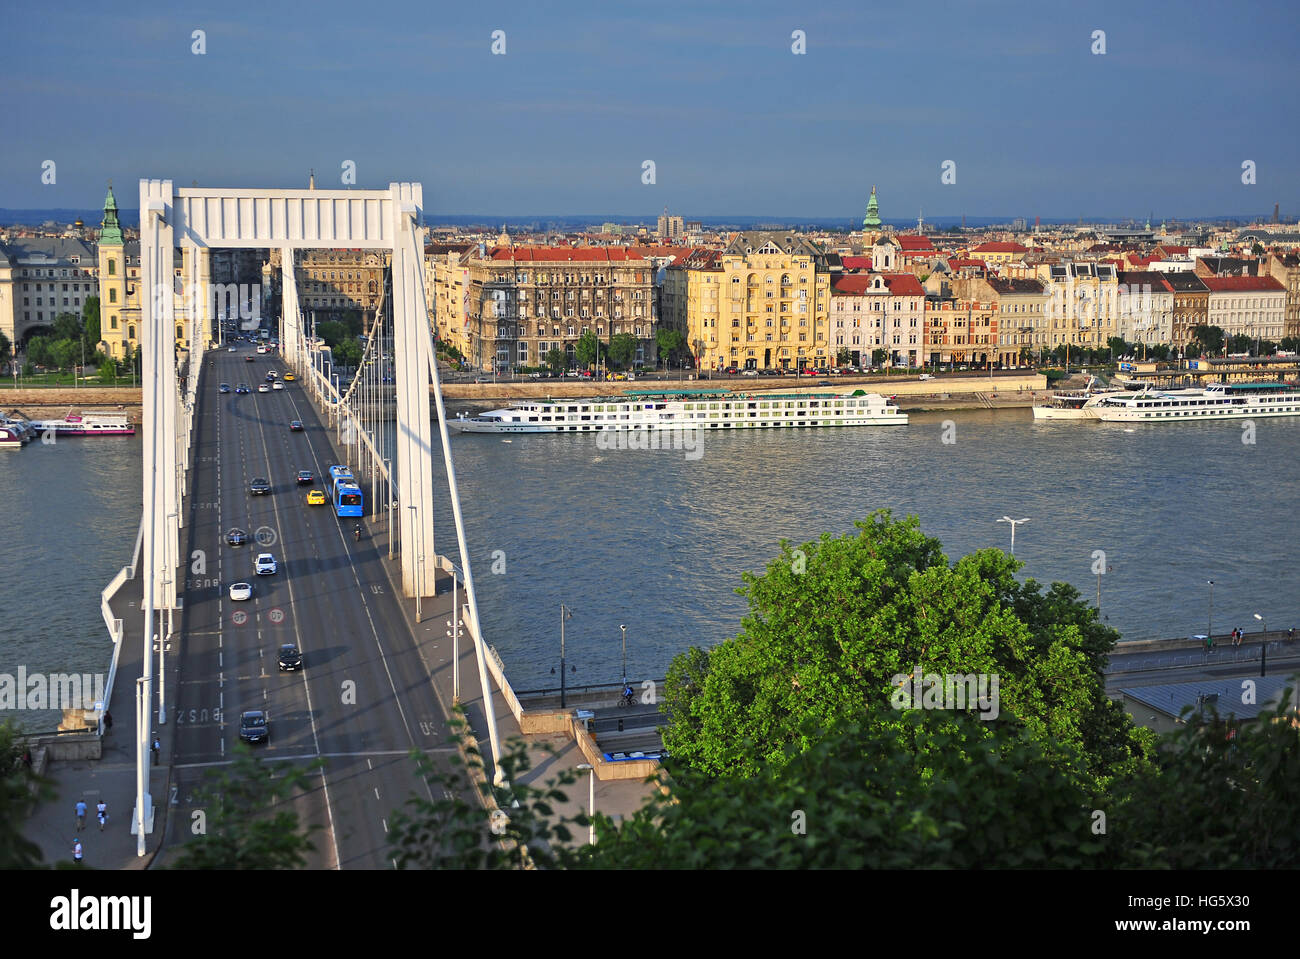 BUDAPEST, Ungarn - Mai 23: Ansicht von Budapest Stadt und Elisabethbrücke am 23. Mai 2016. Budapest ist die Hauptstadt und größte Stadt von Ungarn. Stockfoto